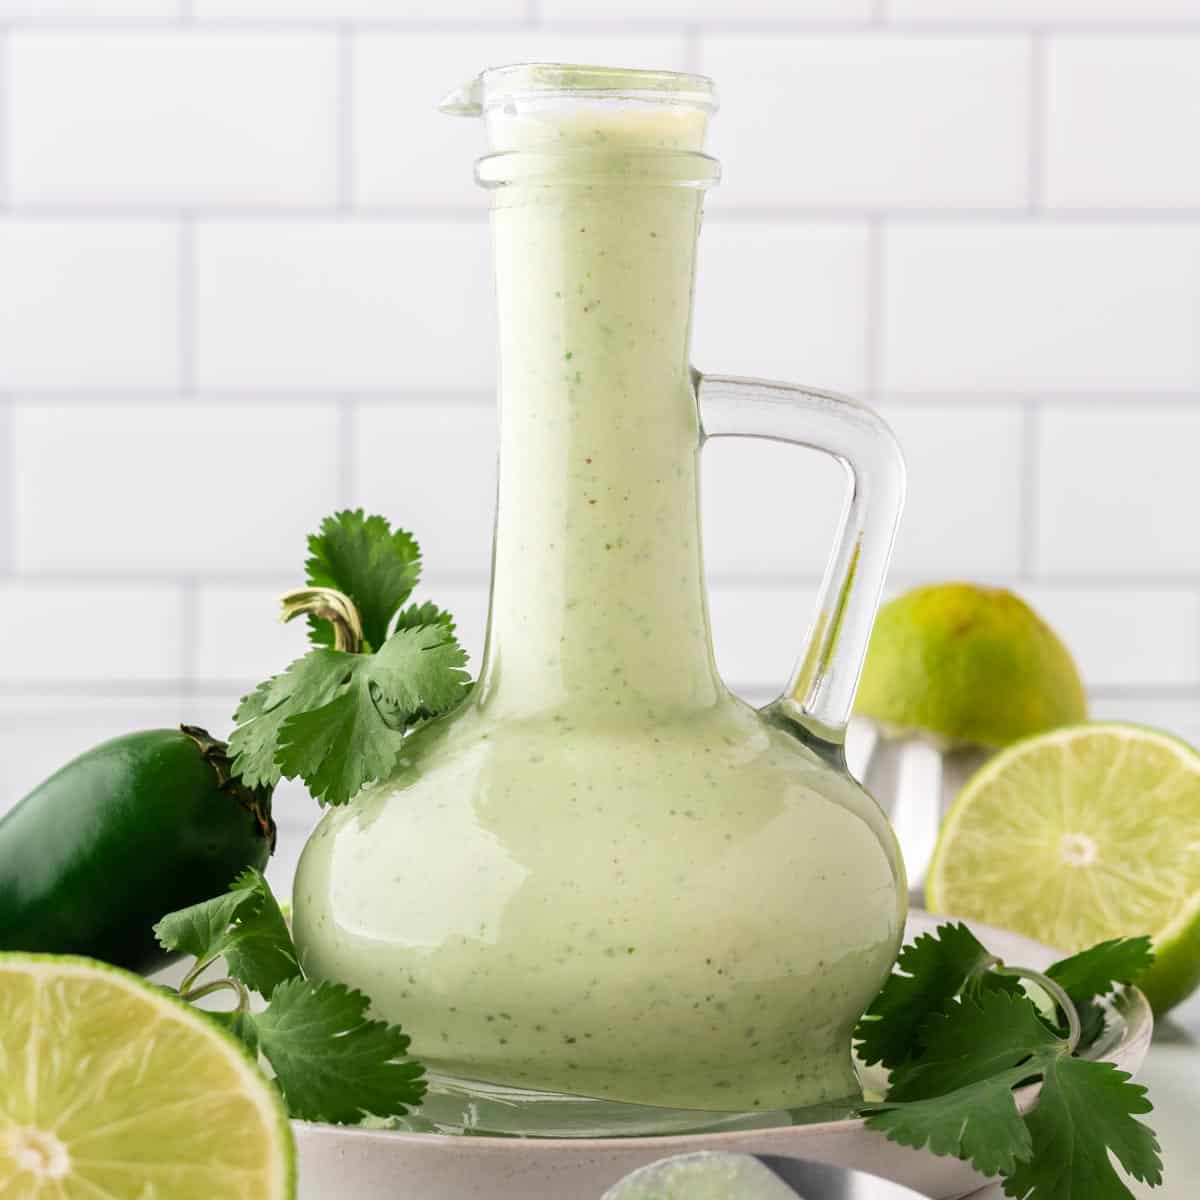 A photo of a carafe of creamy cilantro sauce.